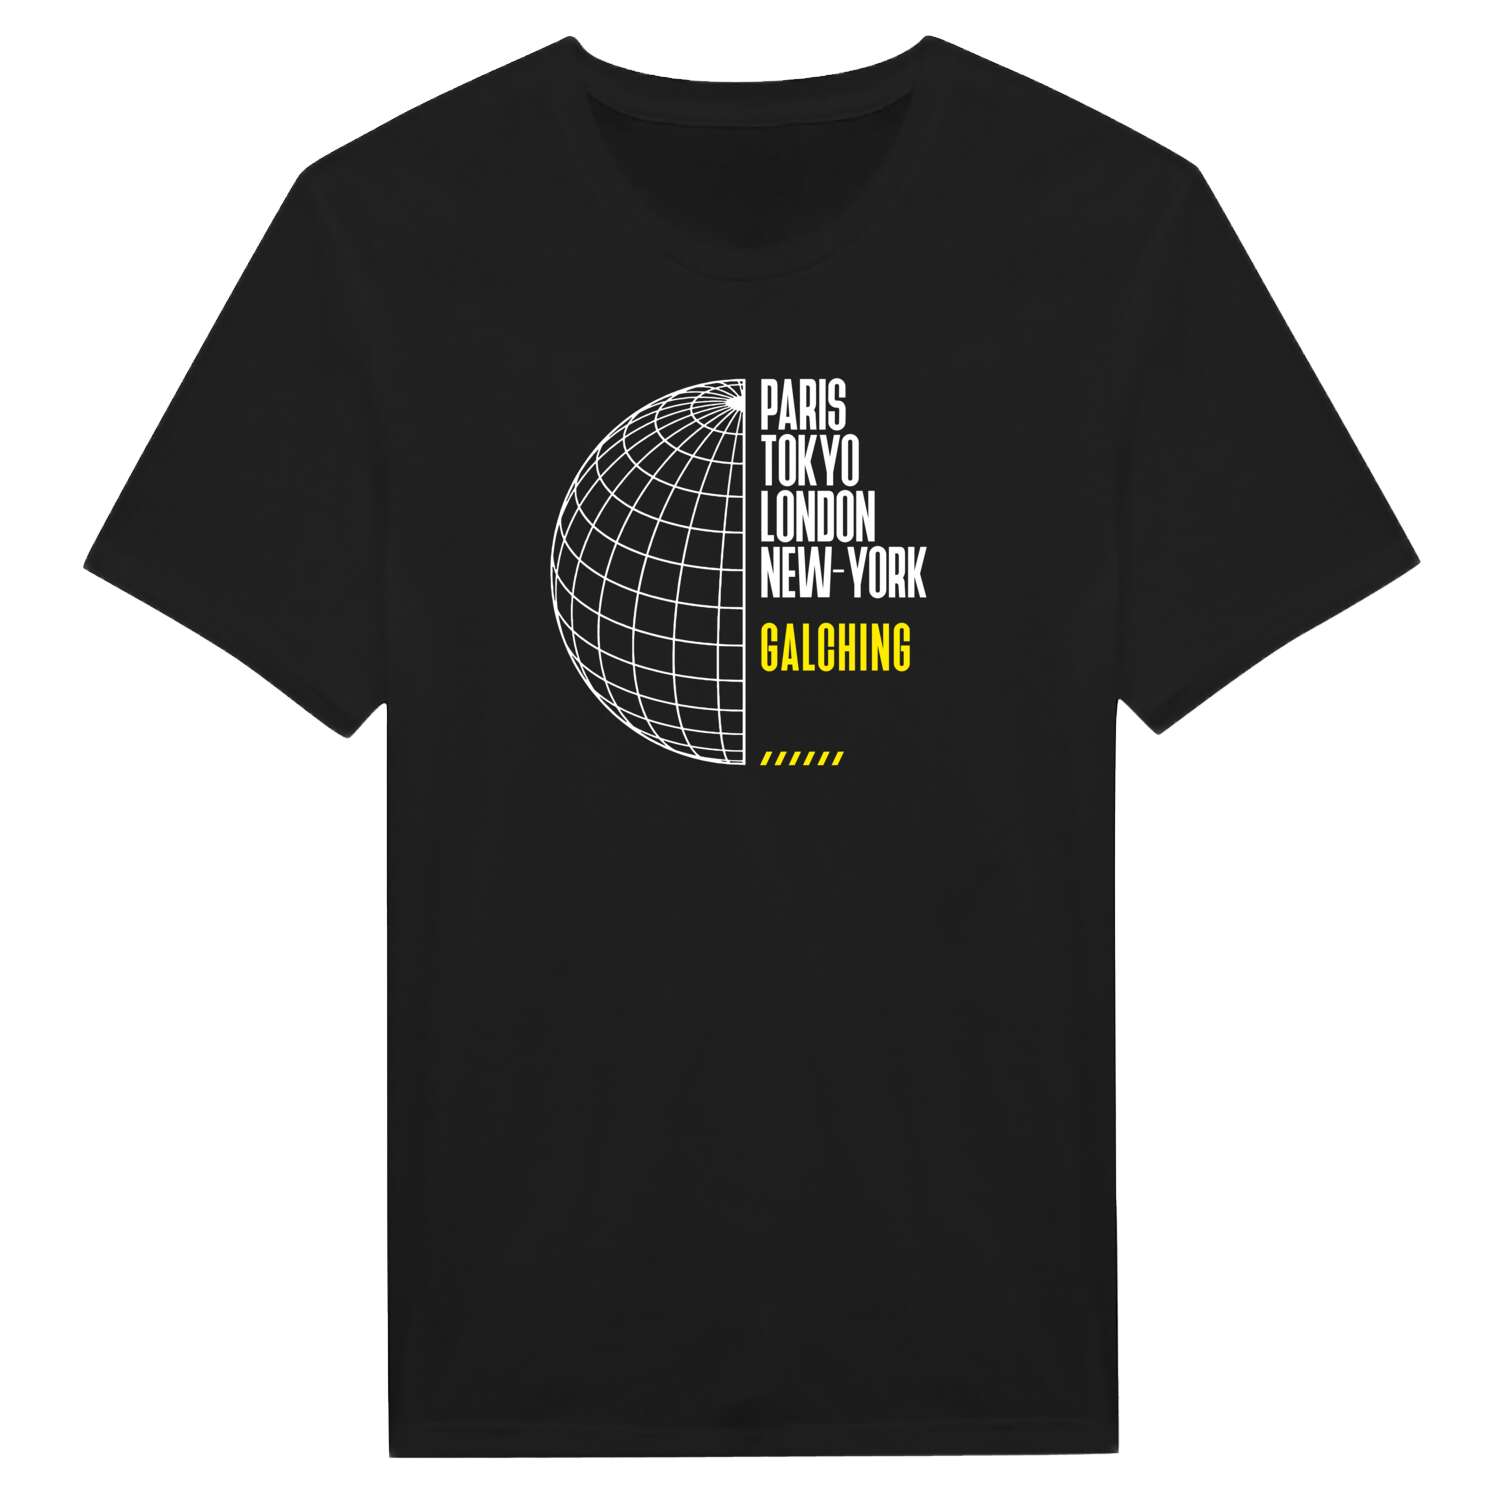 Galching T-Shirt »Paris Tokyo London«